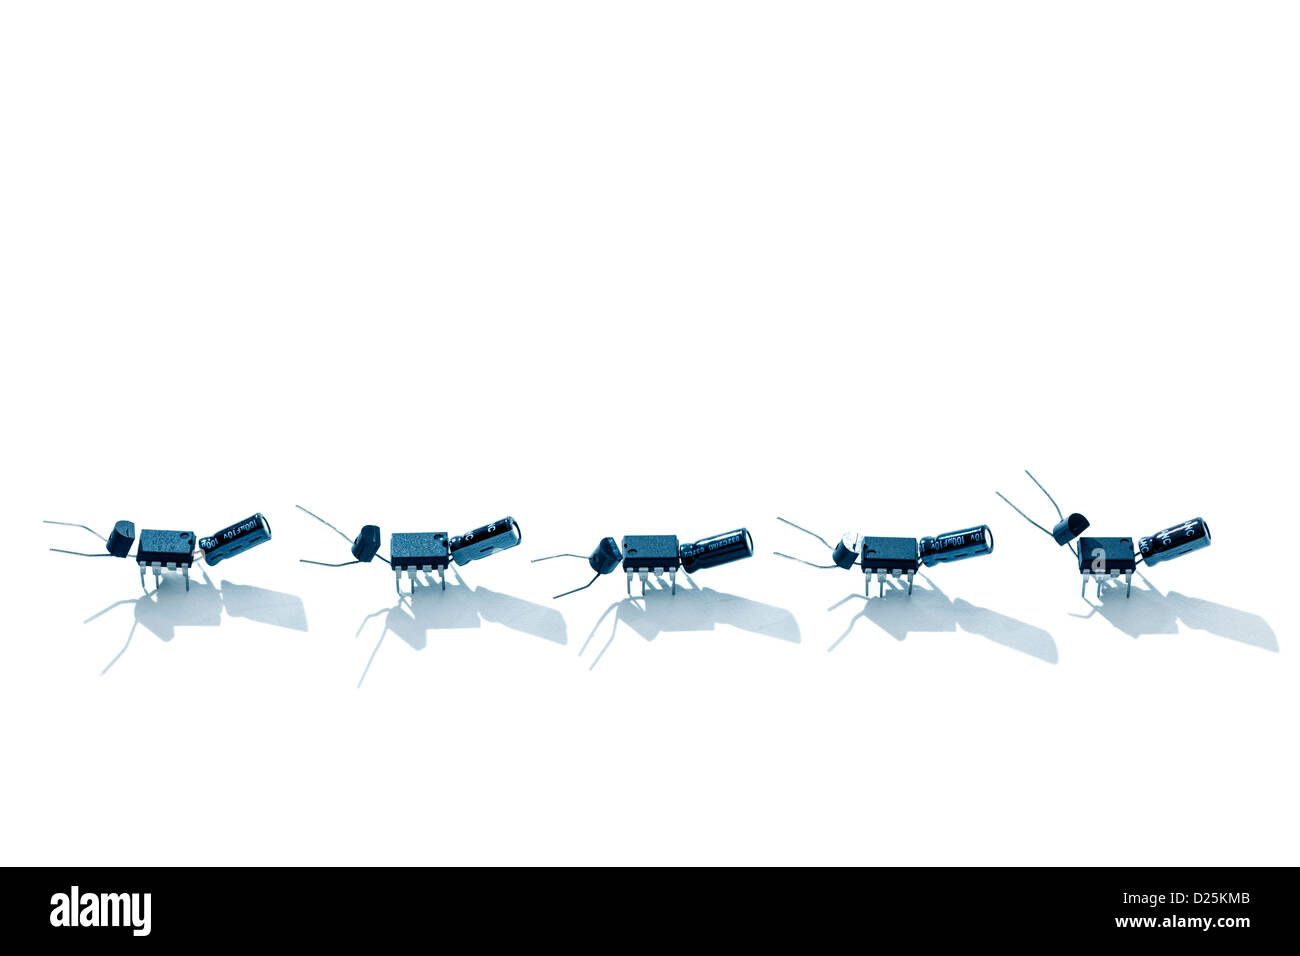 Ameisen / bugs aus Mikrochips und andere elektronische Bauteile Stockfoto